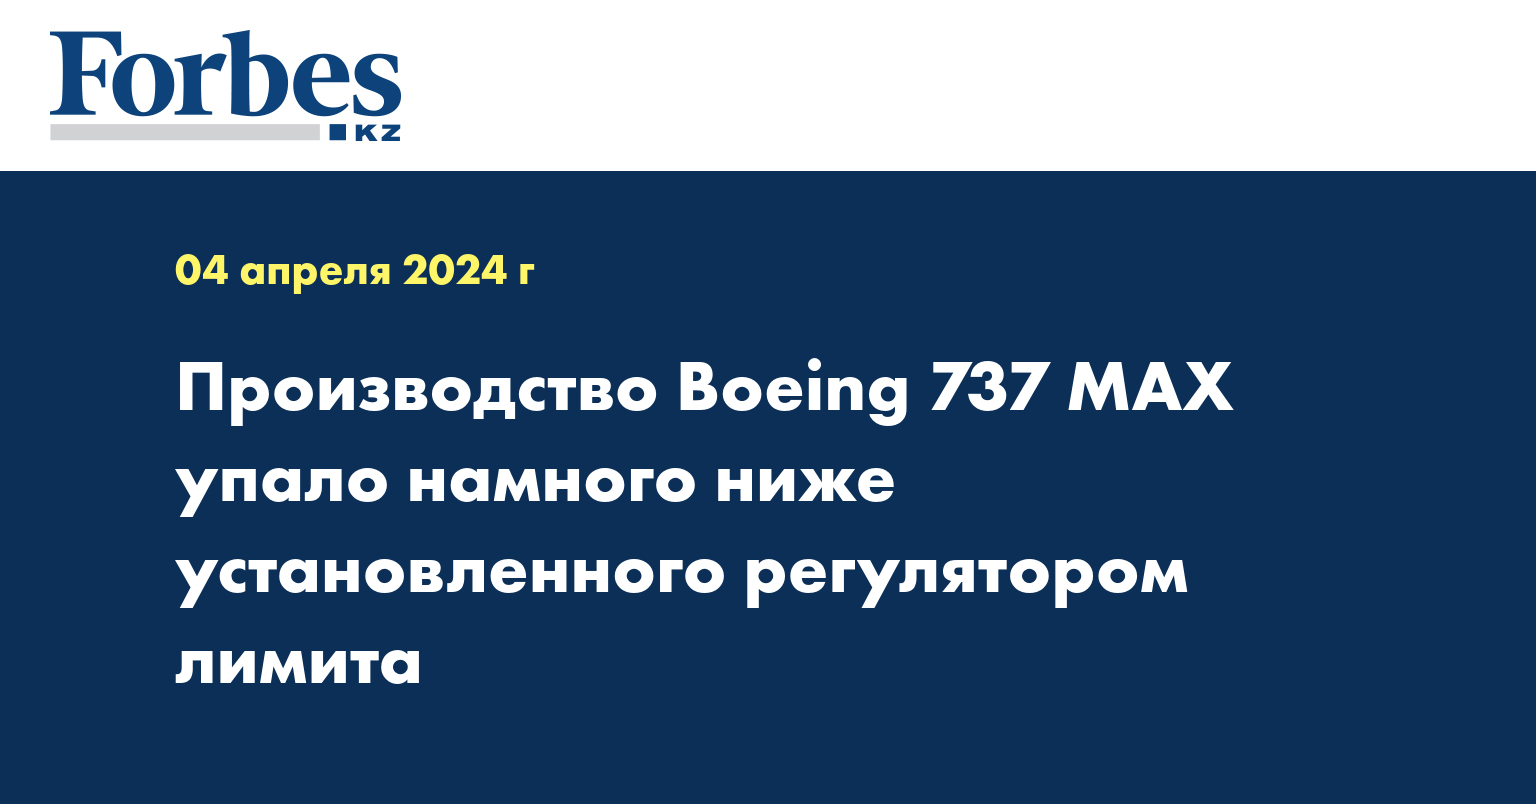 Производство Boeing 737 MAX упало намного ниже установленного регулятором лимита